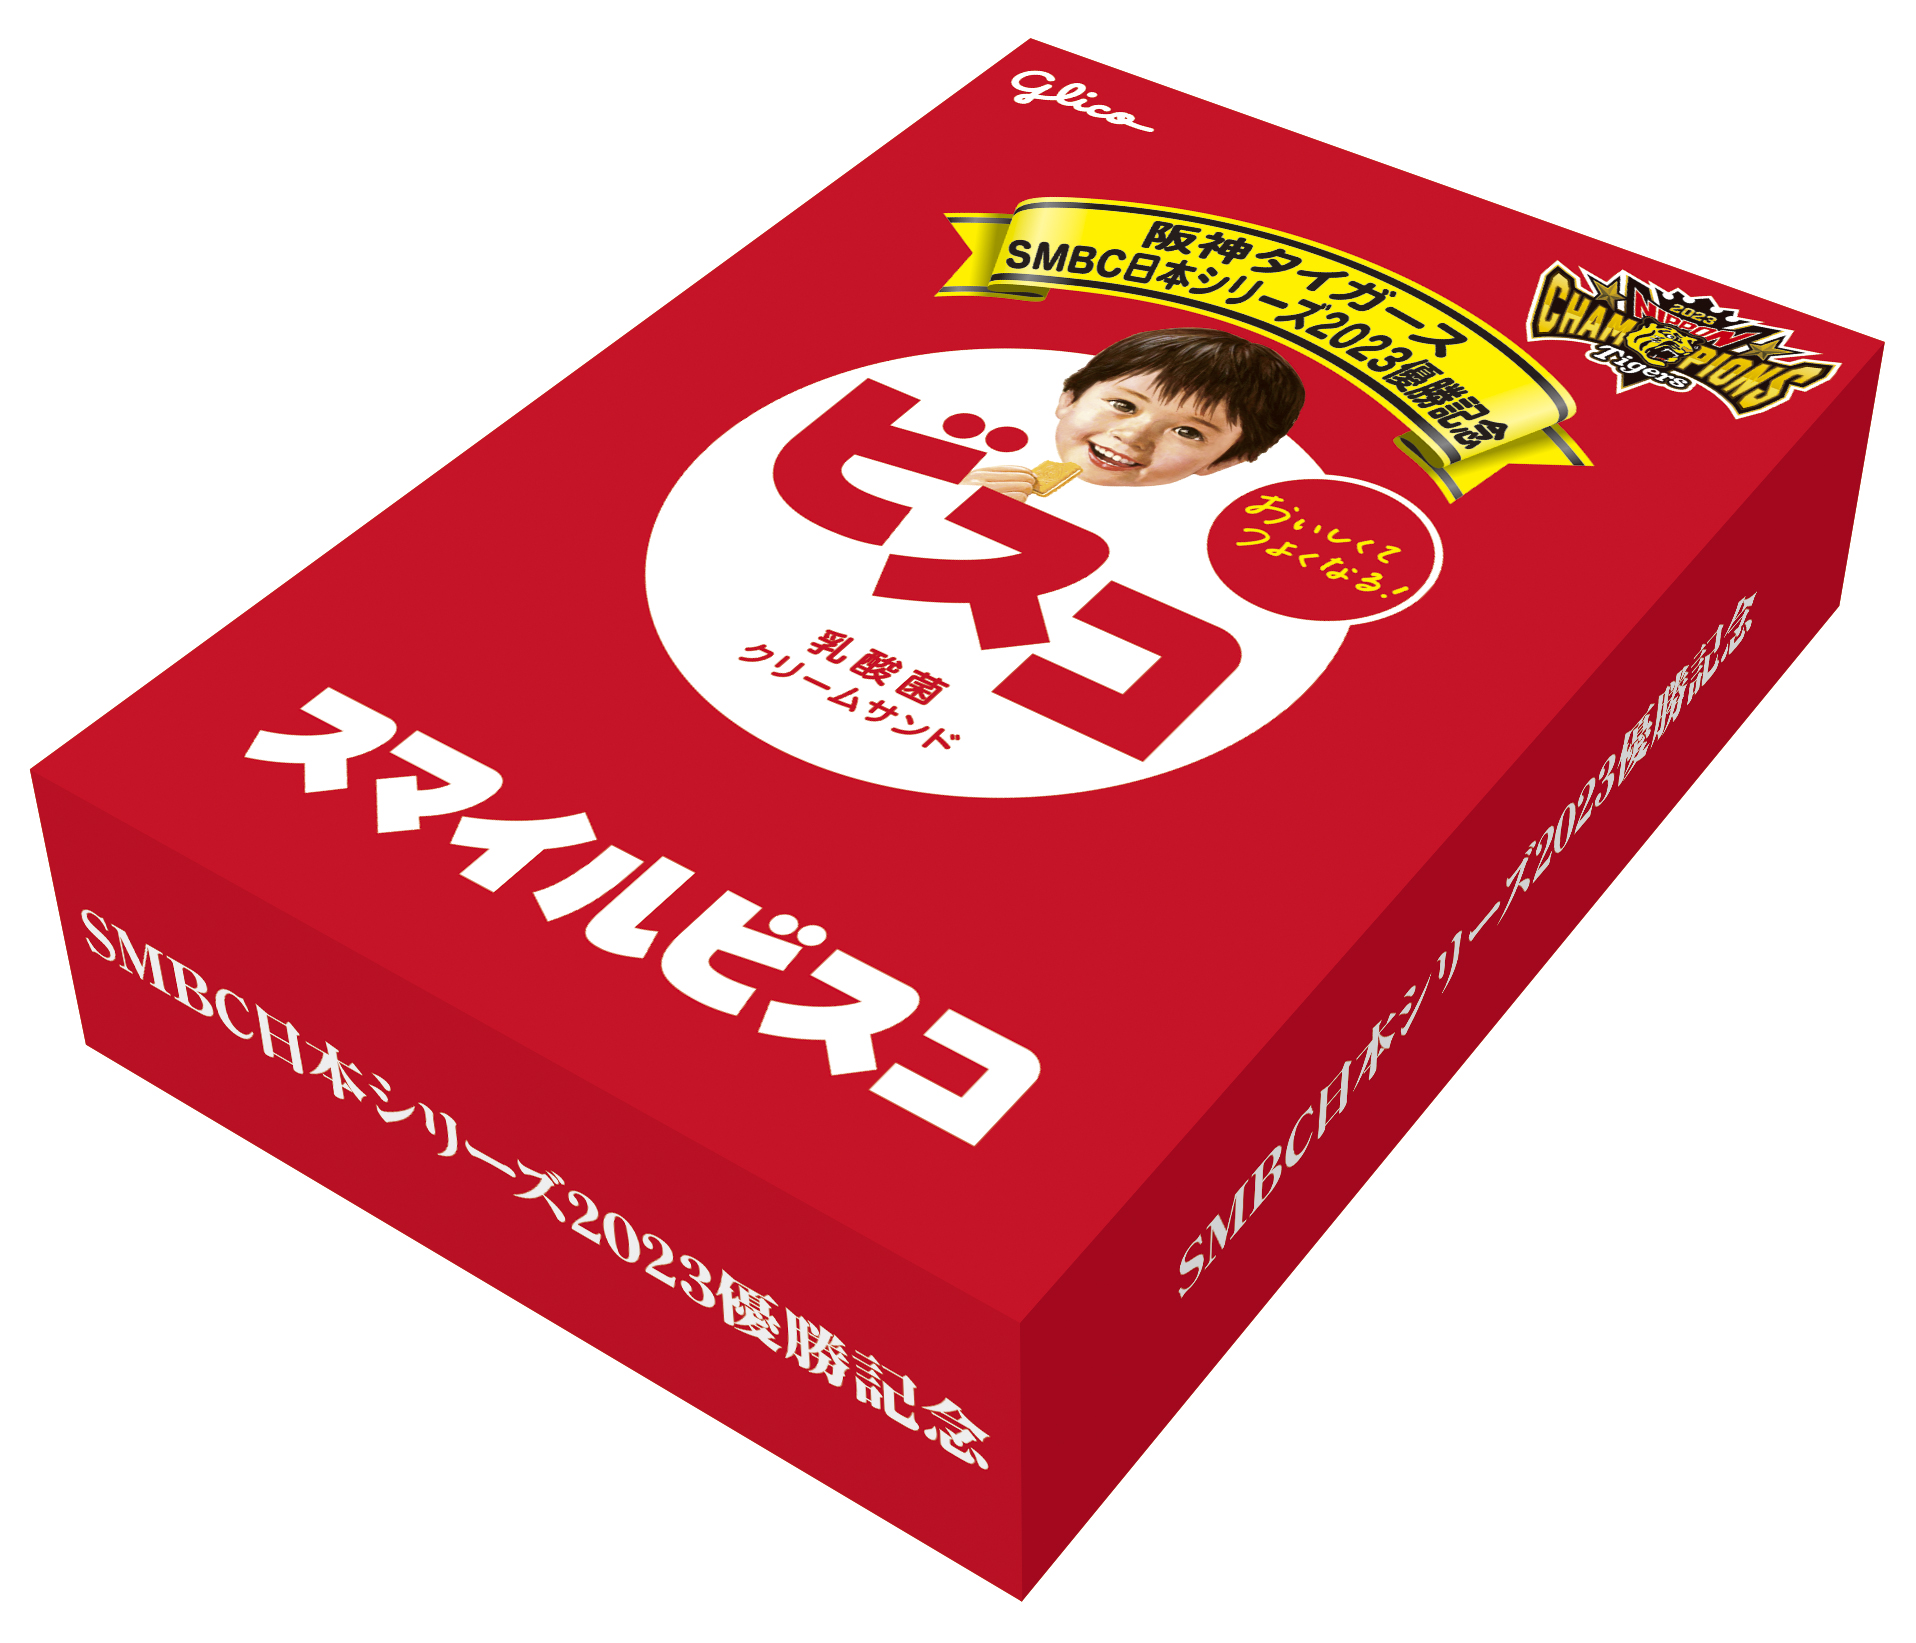 阪神タイガース日本一記念スマイルビスコ」5,000セット限定で発売 